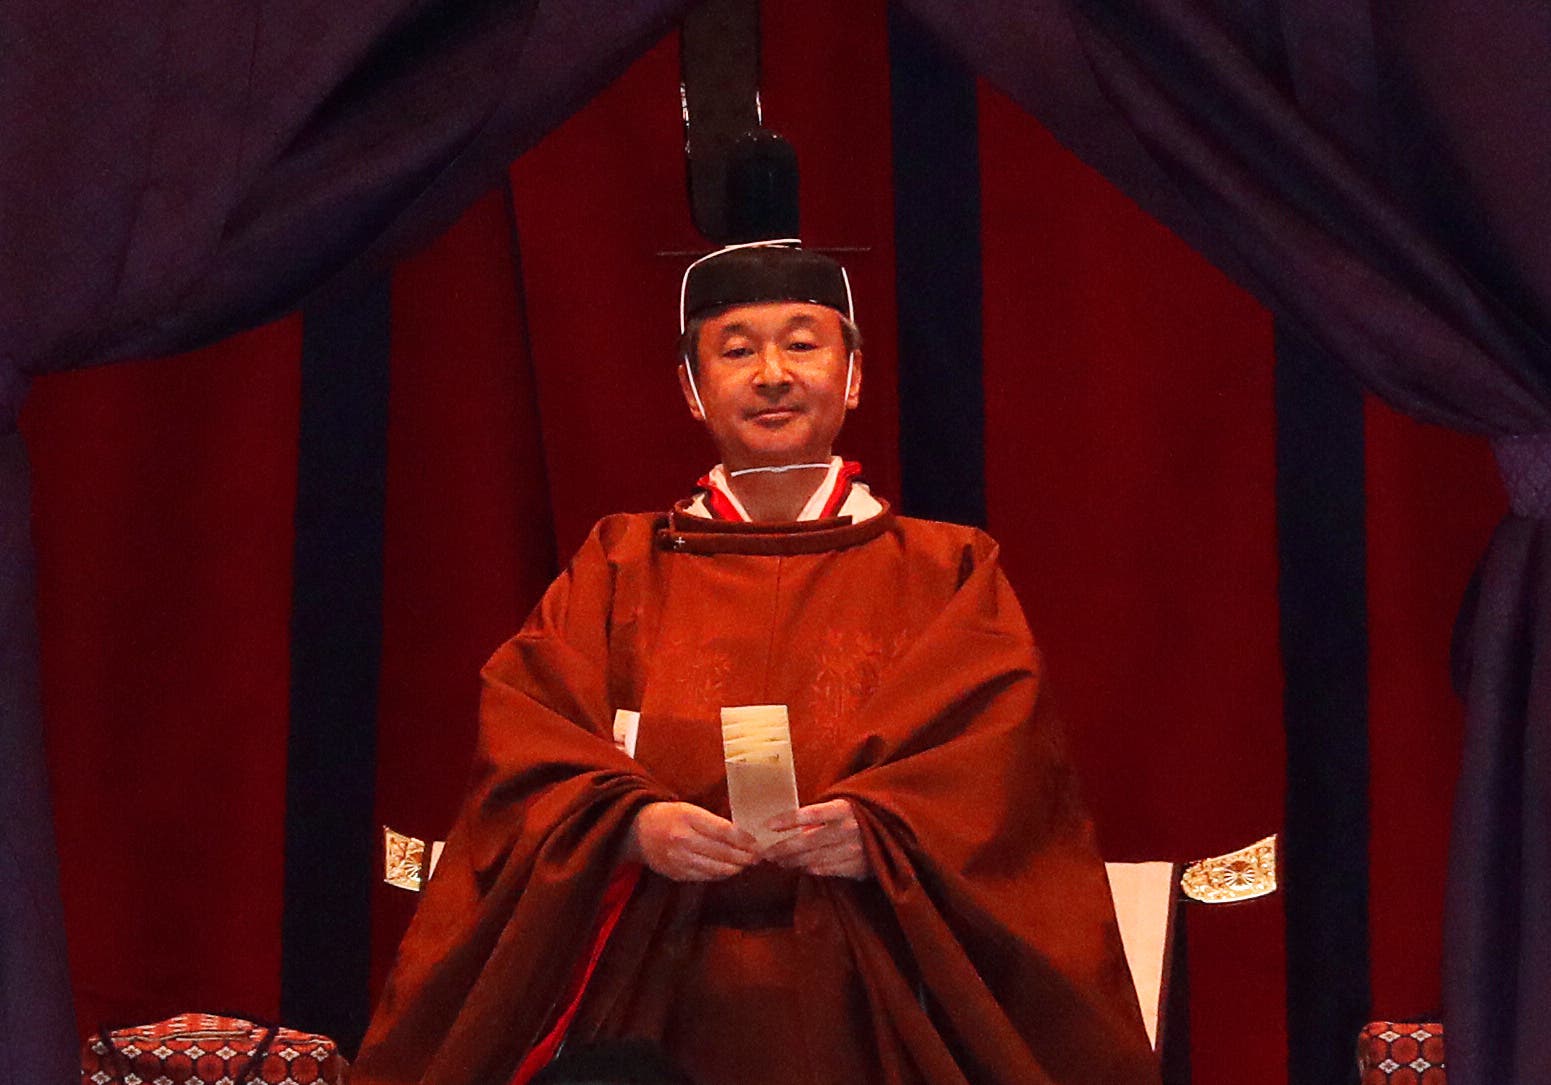 امبراطور اليابان ناروهيتو